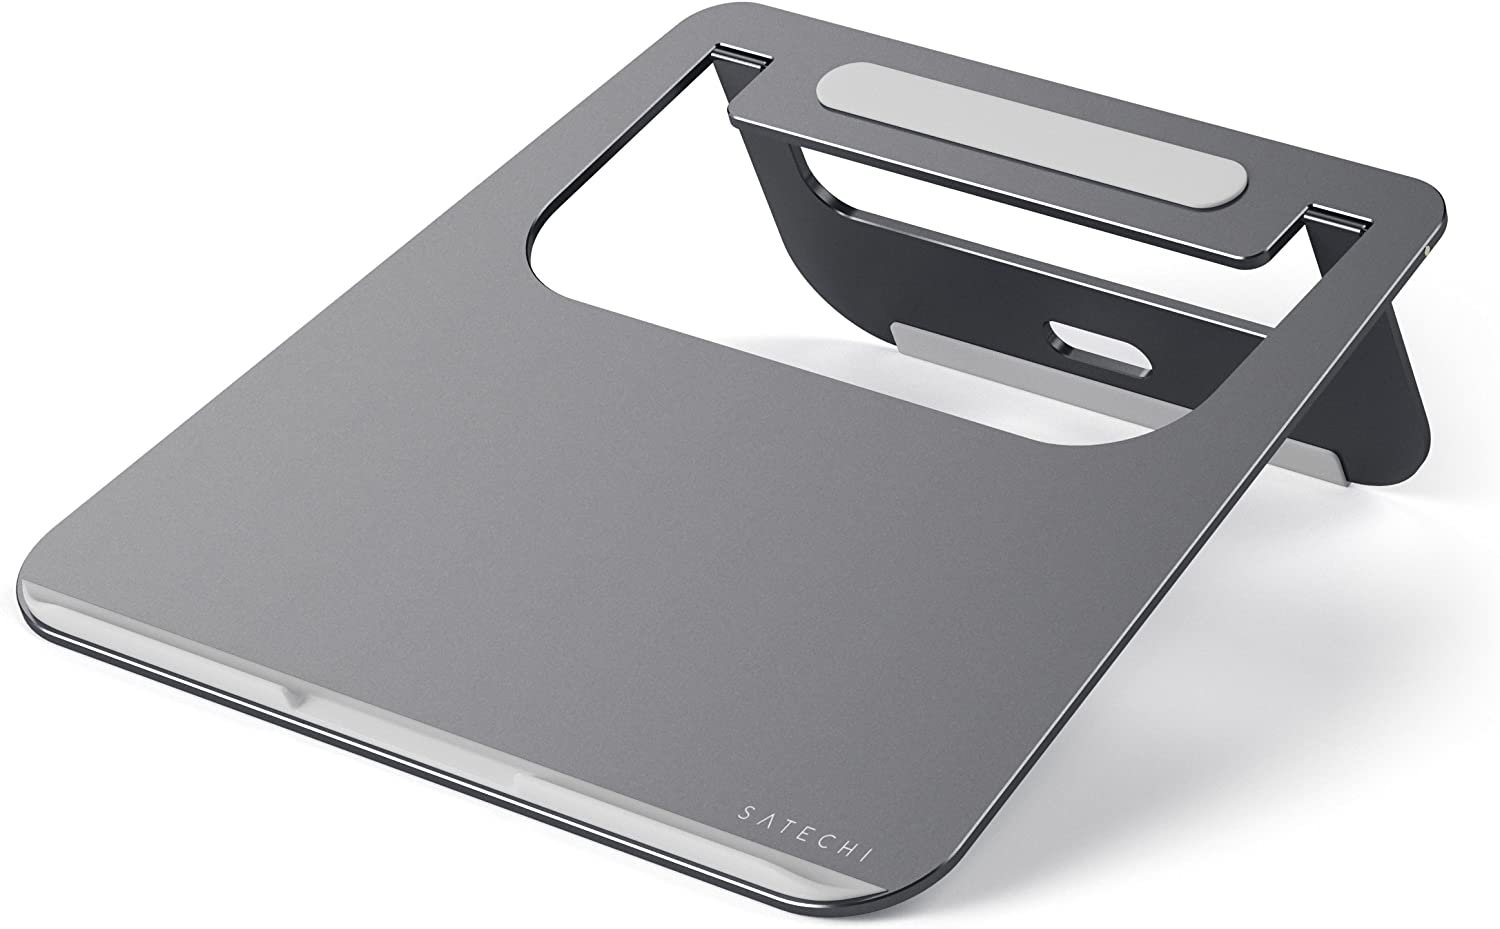 Satechi Aluminium Laptop Stand: Flexibel einsetzbar